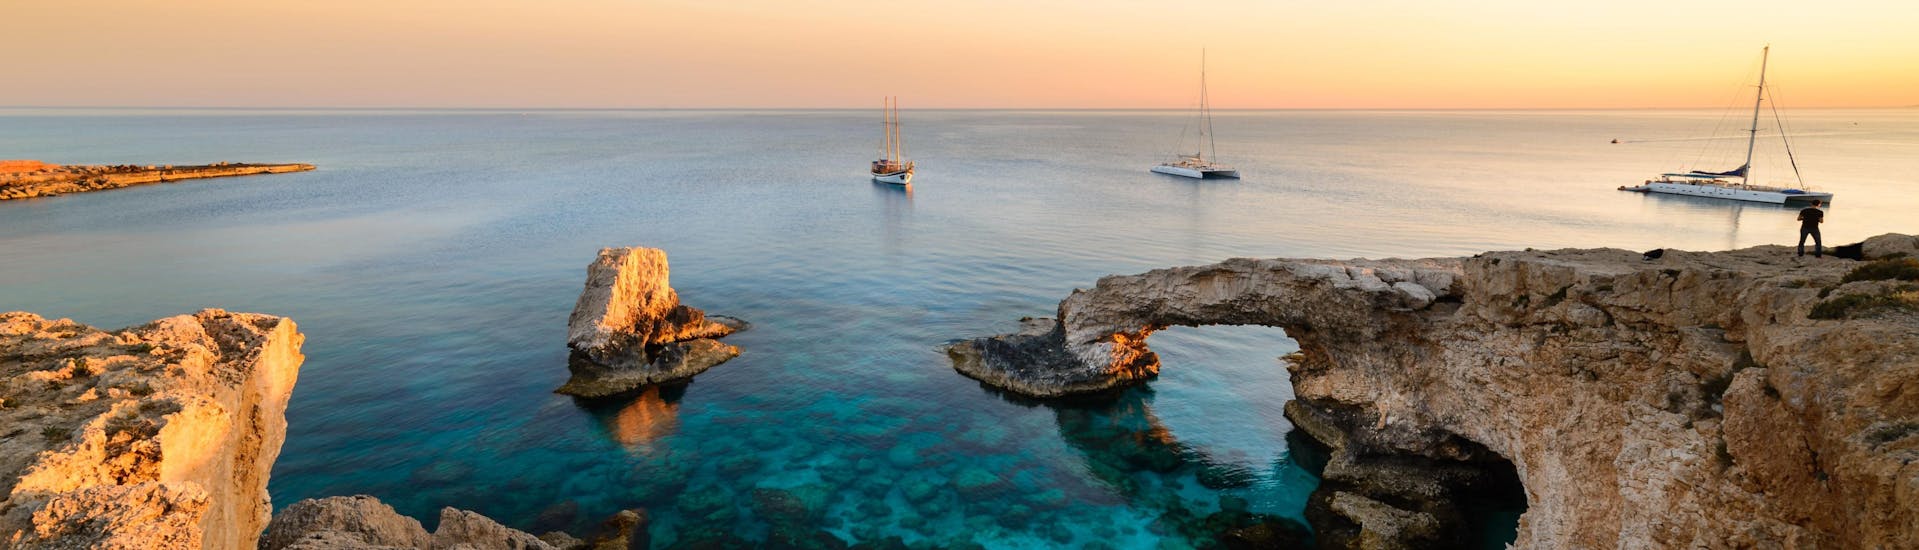 Uitzicht over de Blue Lagoon in de buurt van Cape Greco, een geweldige bestemming voor boottochten in Cyprus.